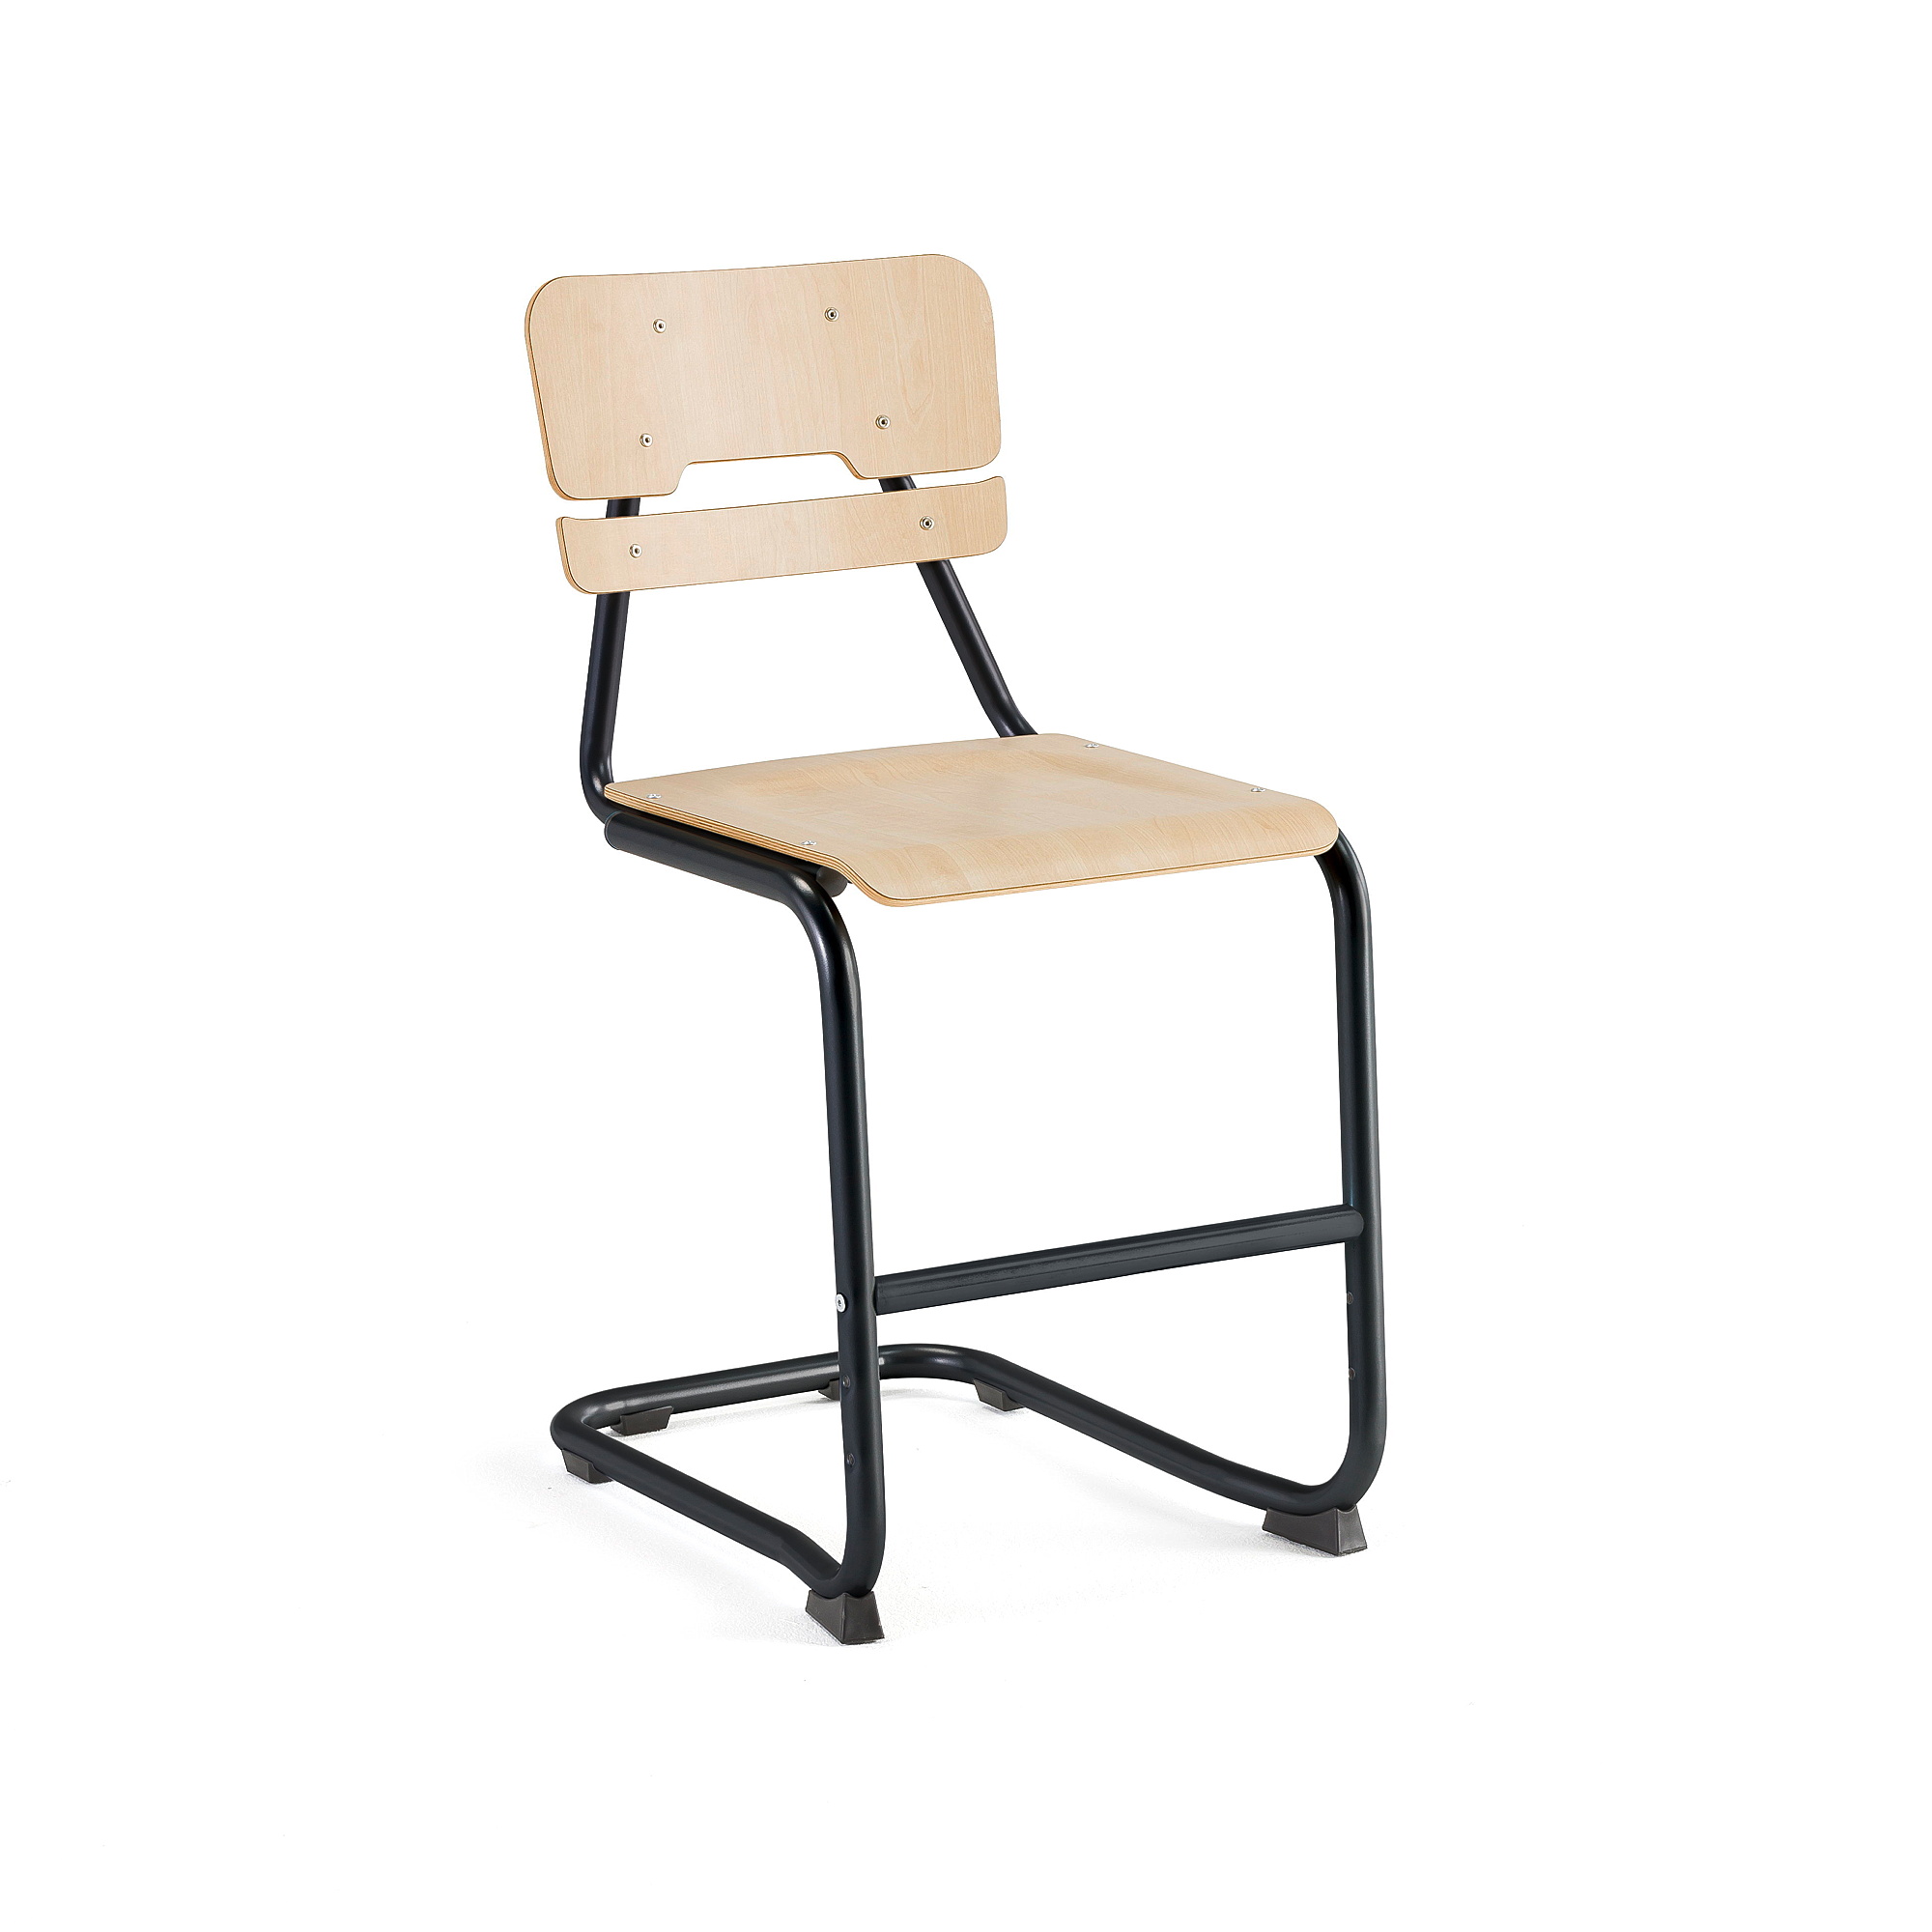 Školní židle LEGERE I, výška 500 mm, antracitově šedá, bříza